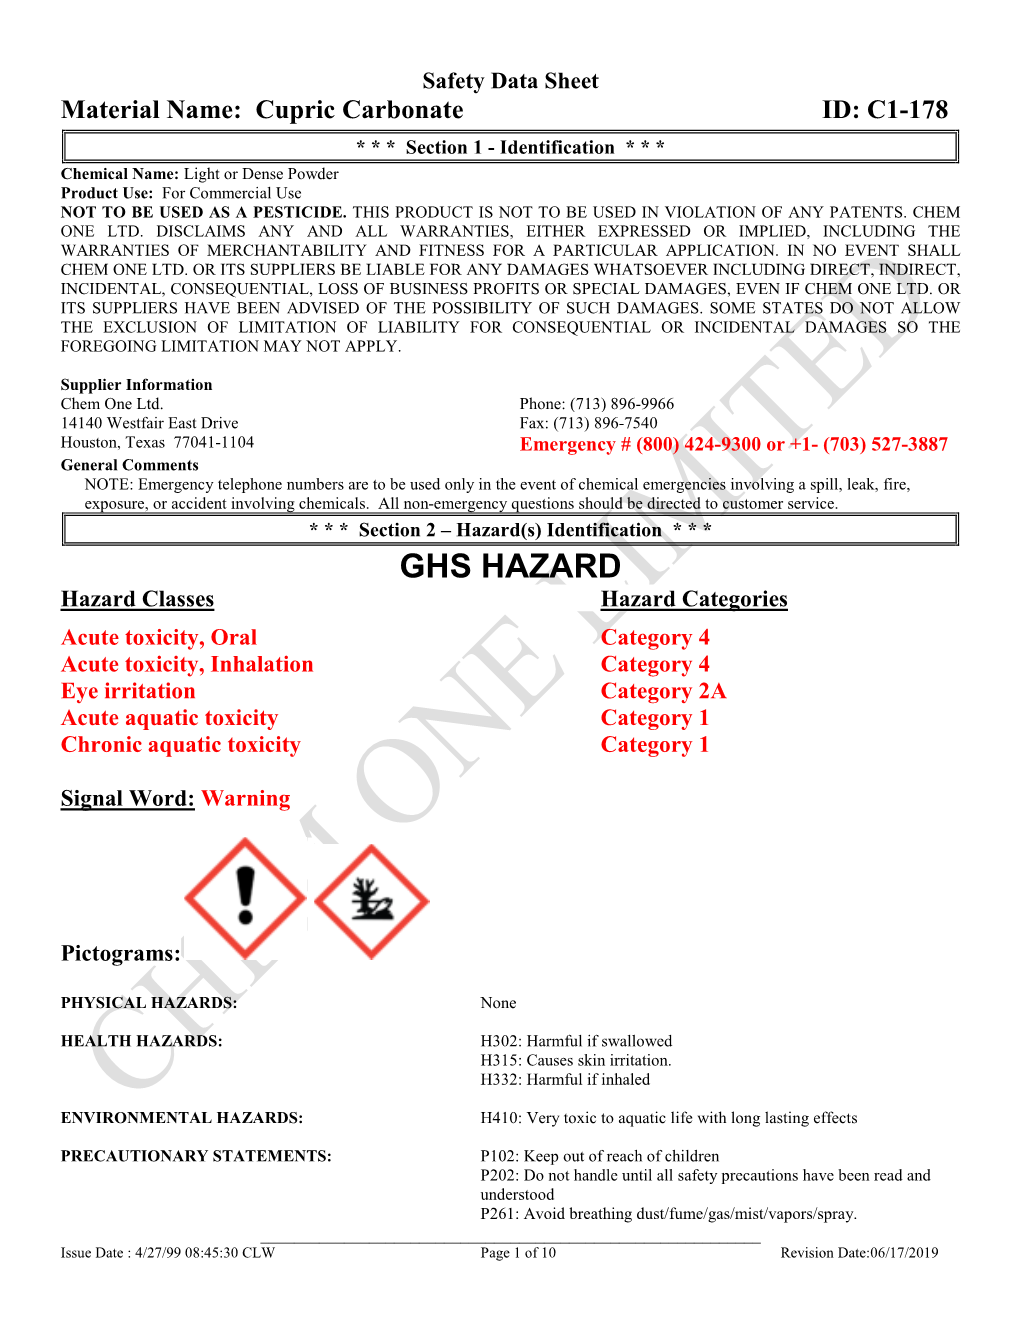 Cupric Carbonate ID: C1-178